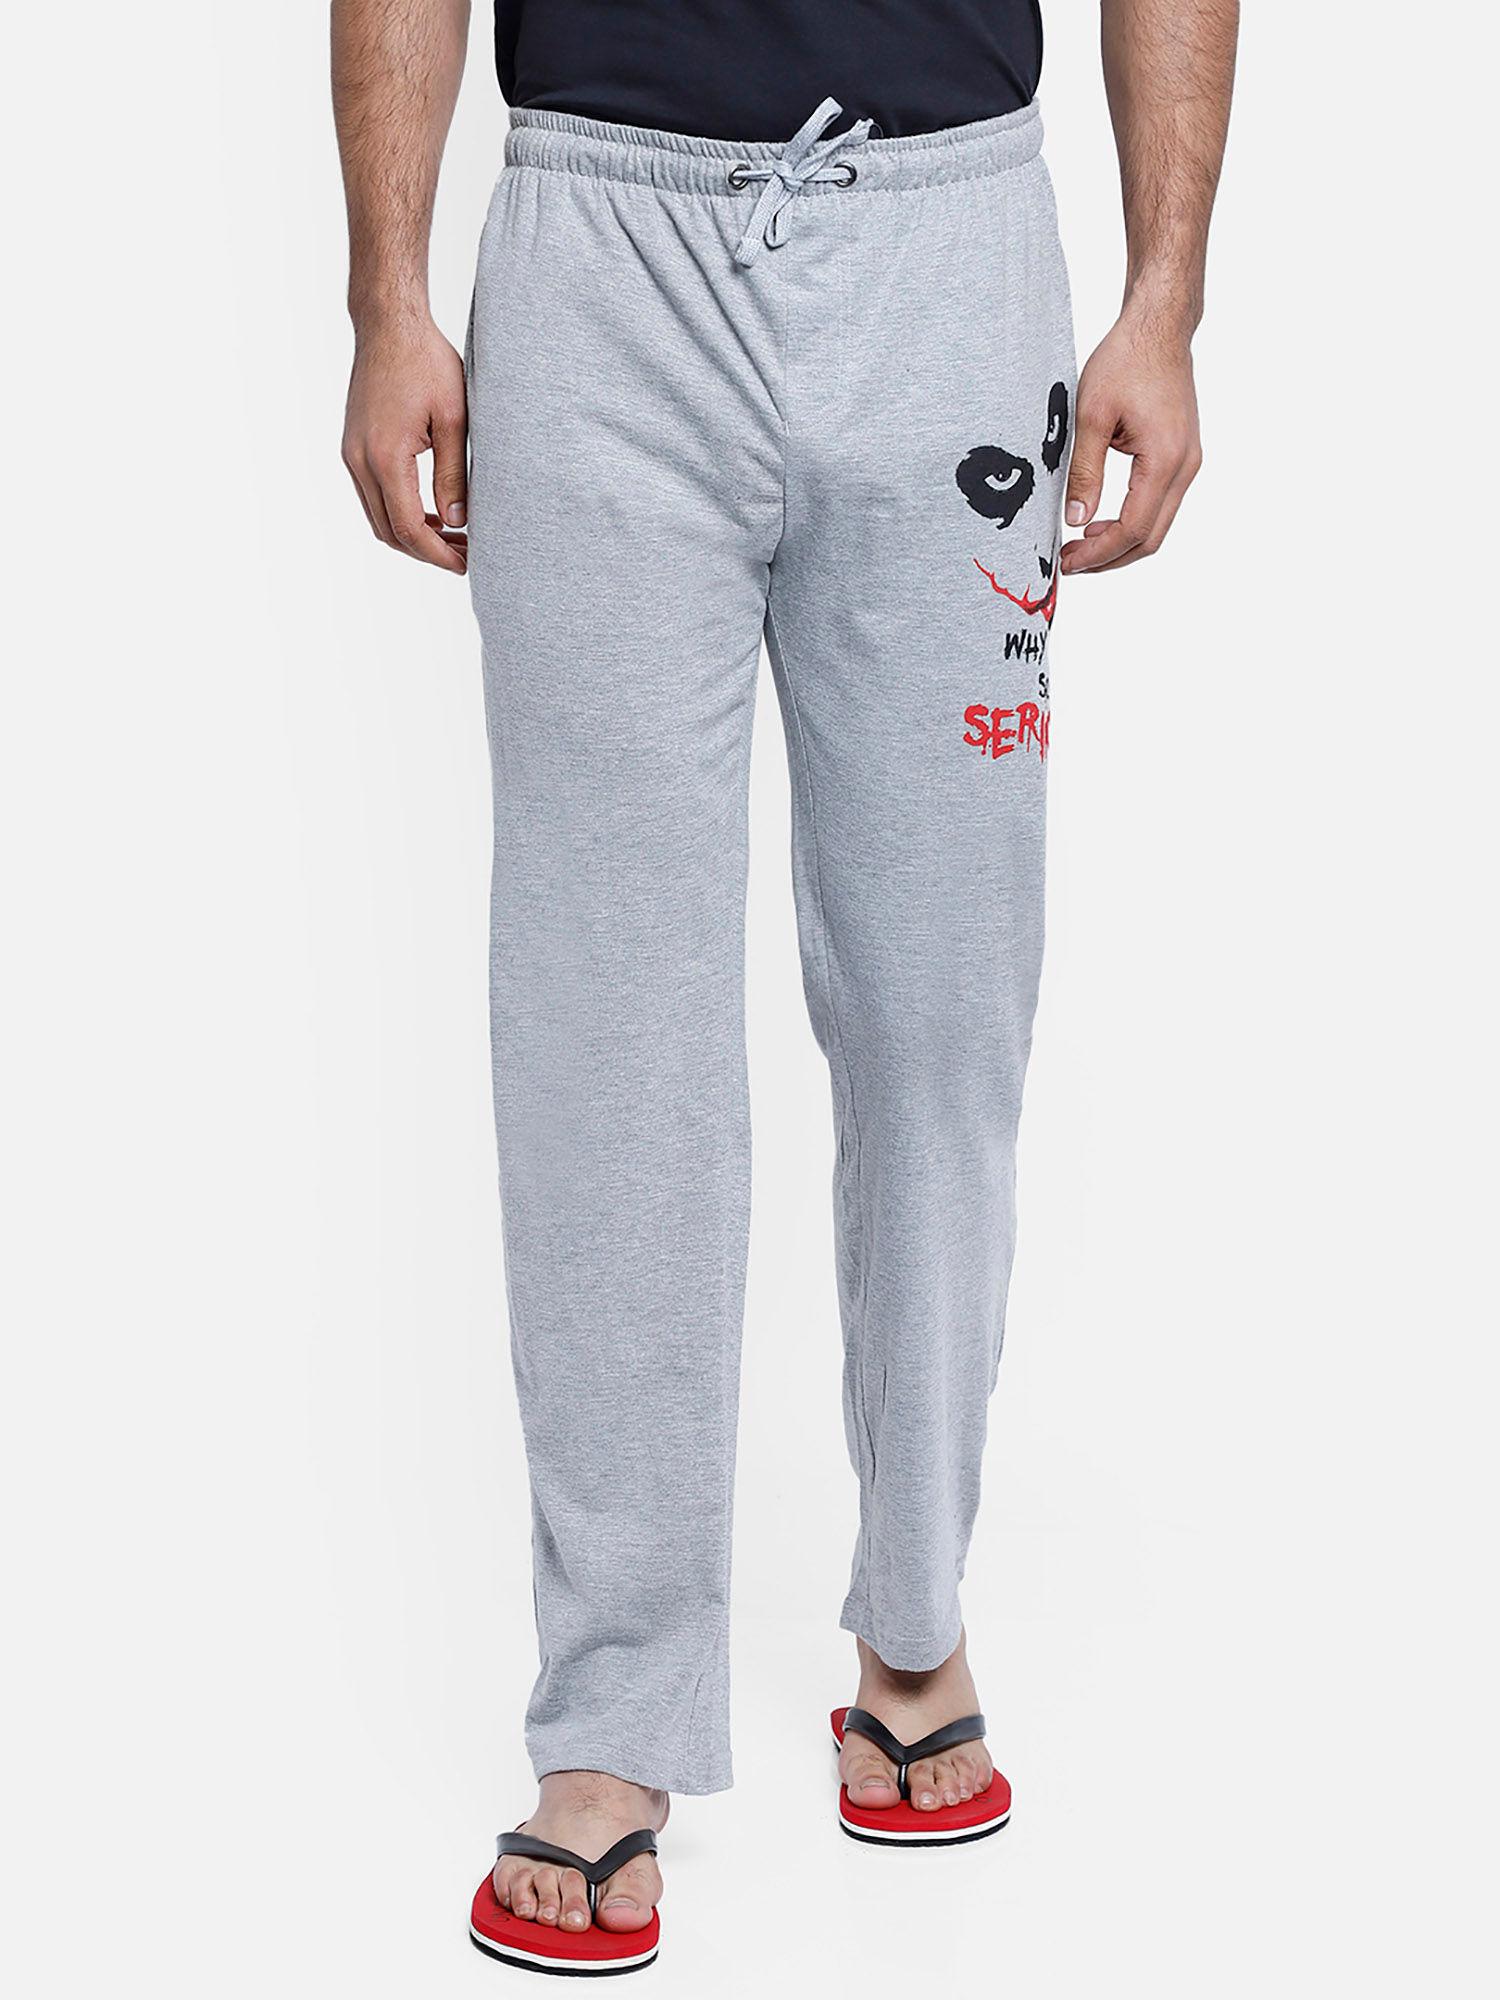 joker-featured-pyjama-for-men-grey